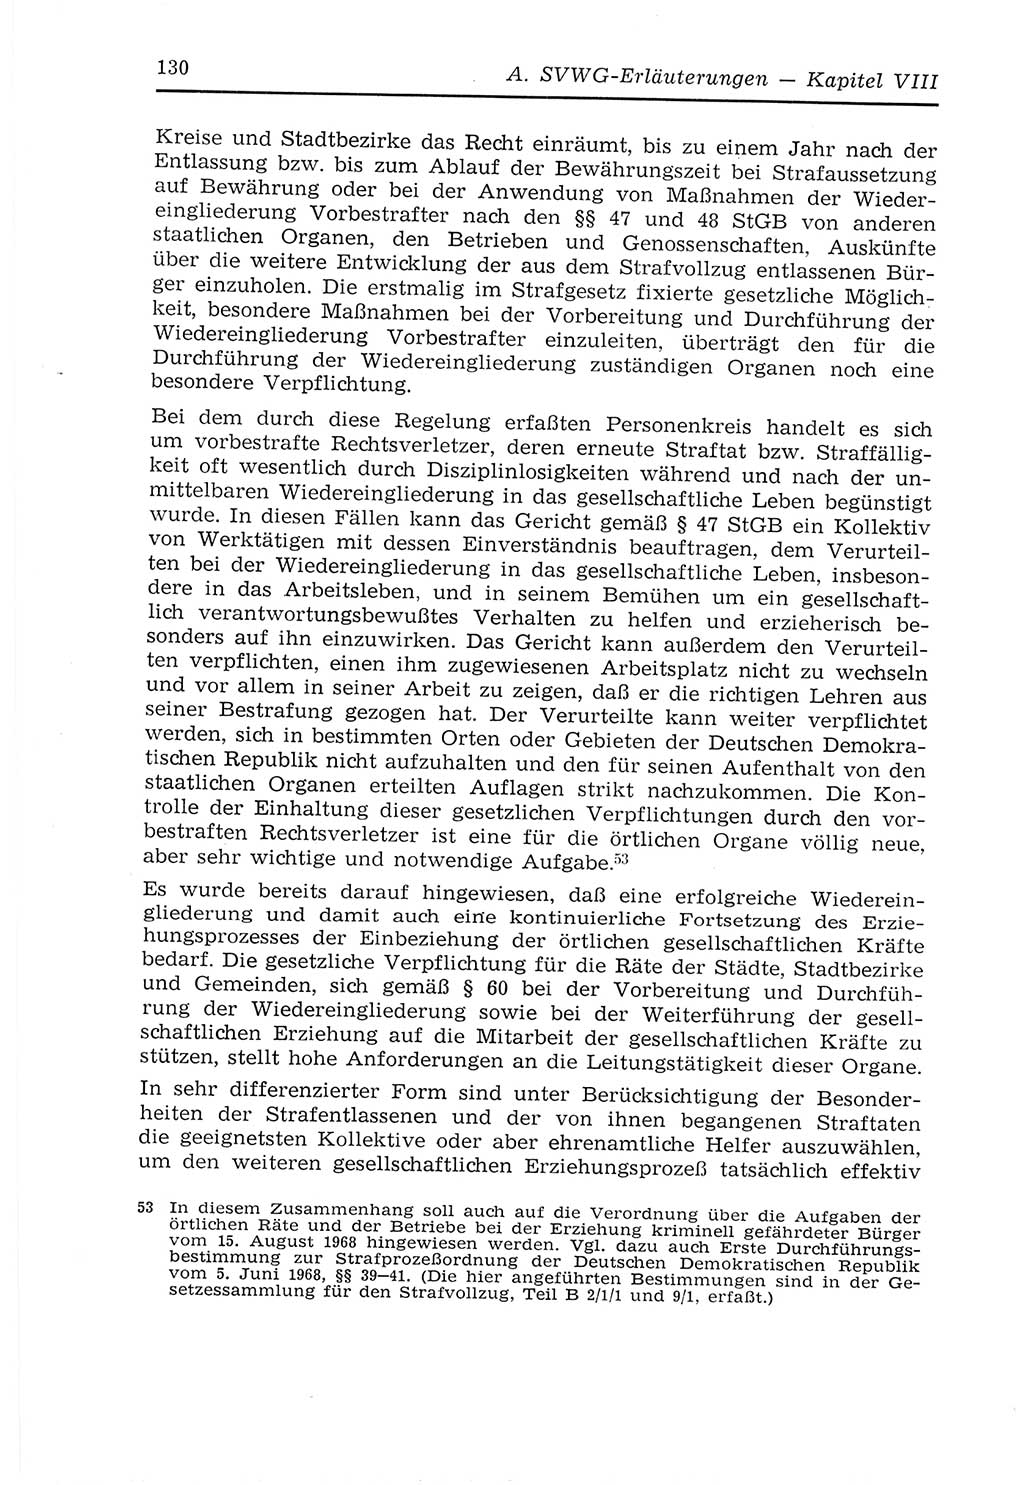 Strafvollzugs- und Wiedereingliederungsgesetz (SVWG) der Deutschen Demokratischen Republik (DDR) 1968, Seite 130 (SVWG DDR 1968, S. 130)